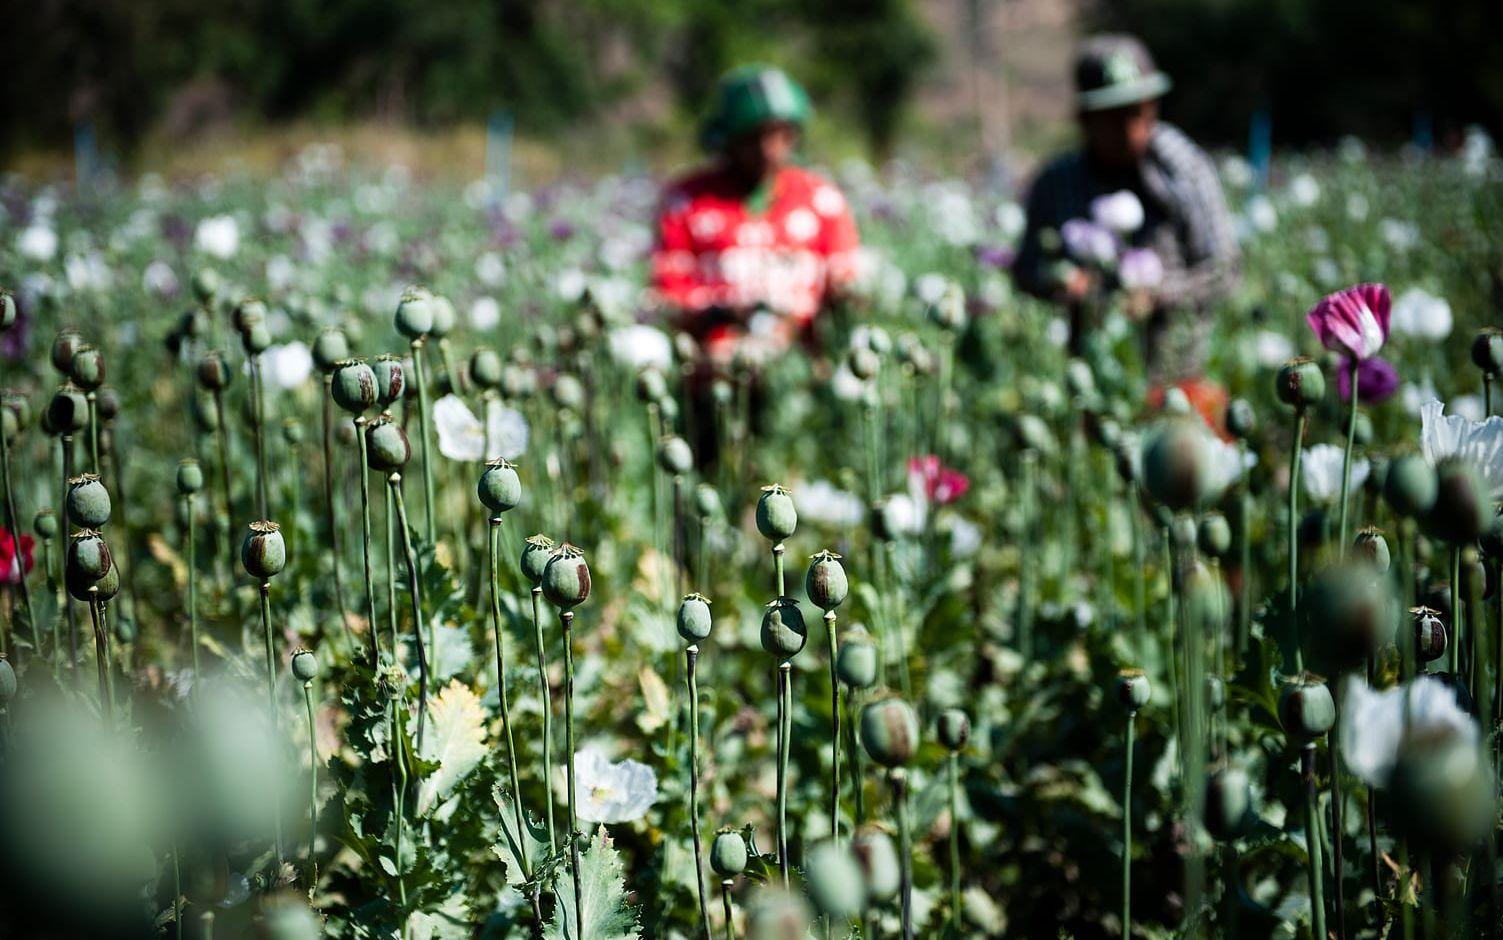 Praktiskt taget varenda knopp på vallmofältet bär de bruna spåren efter att ha blivit tappade på opium.